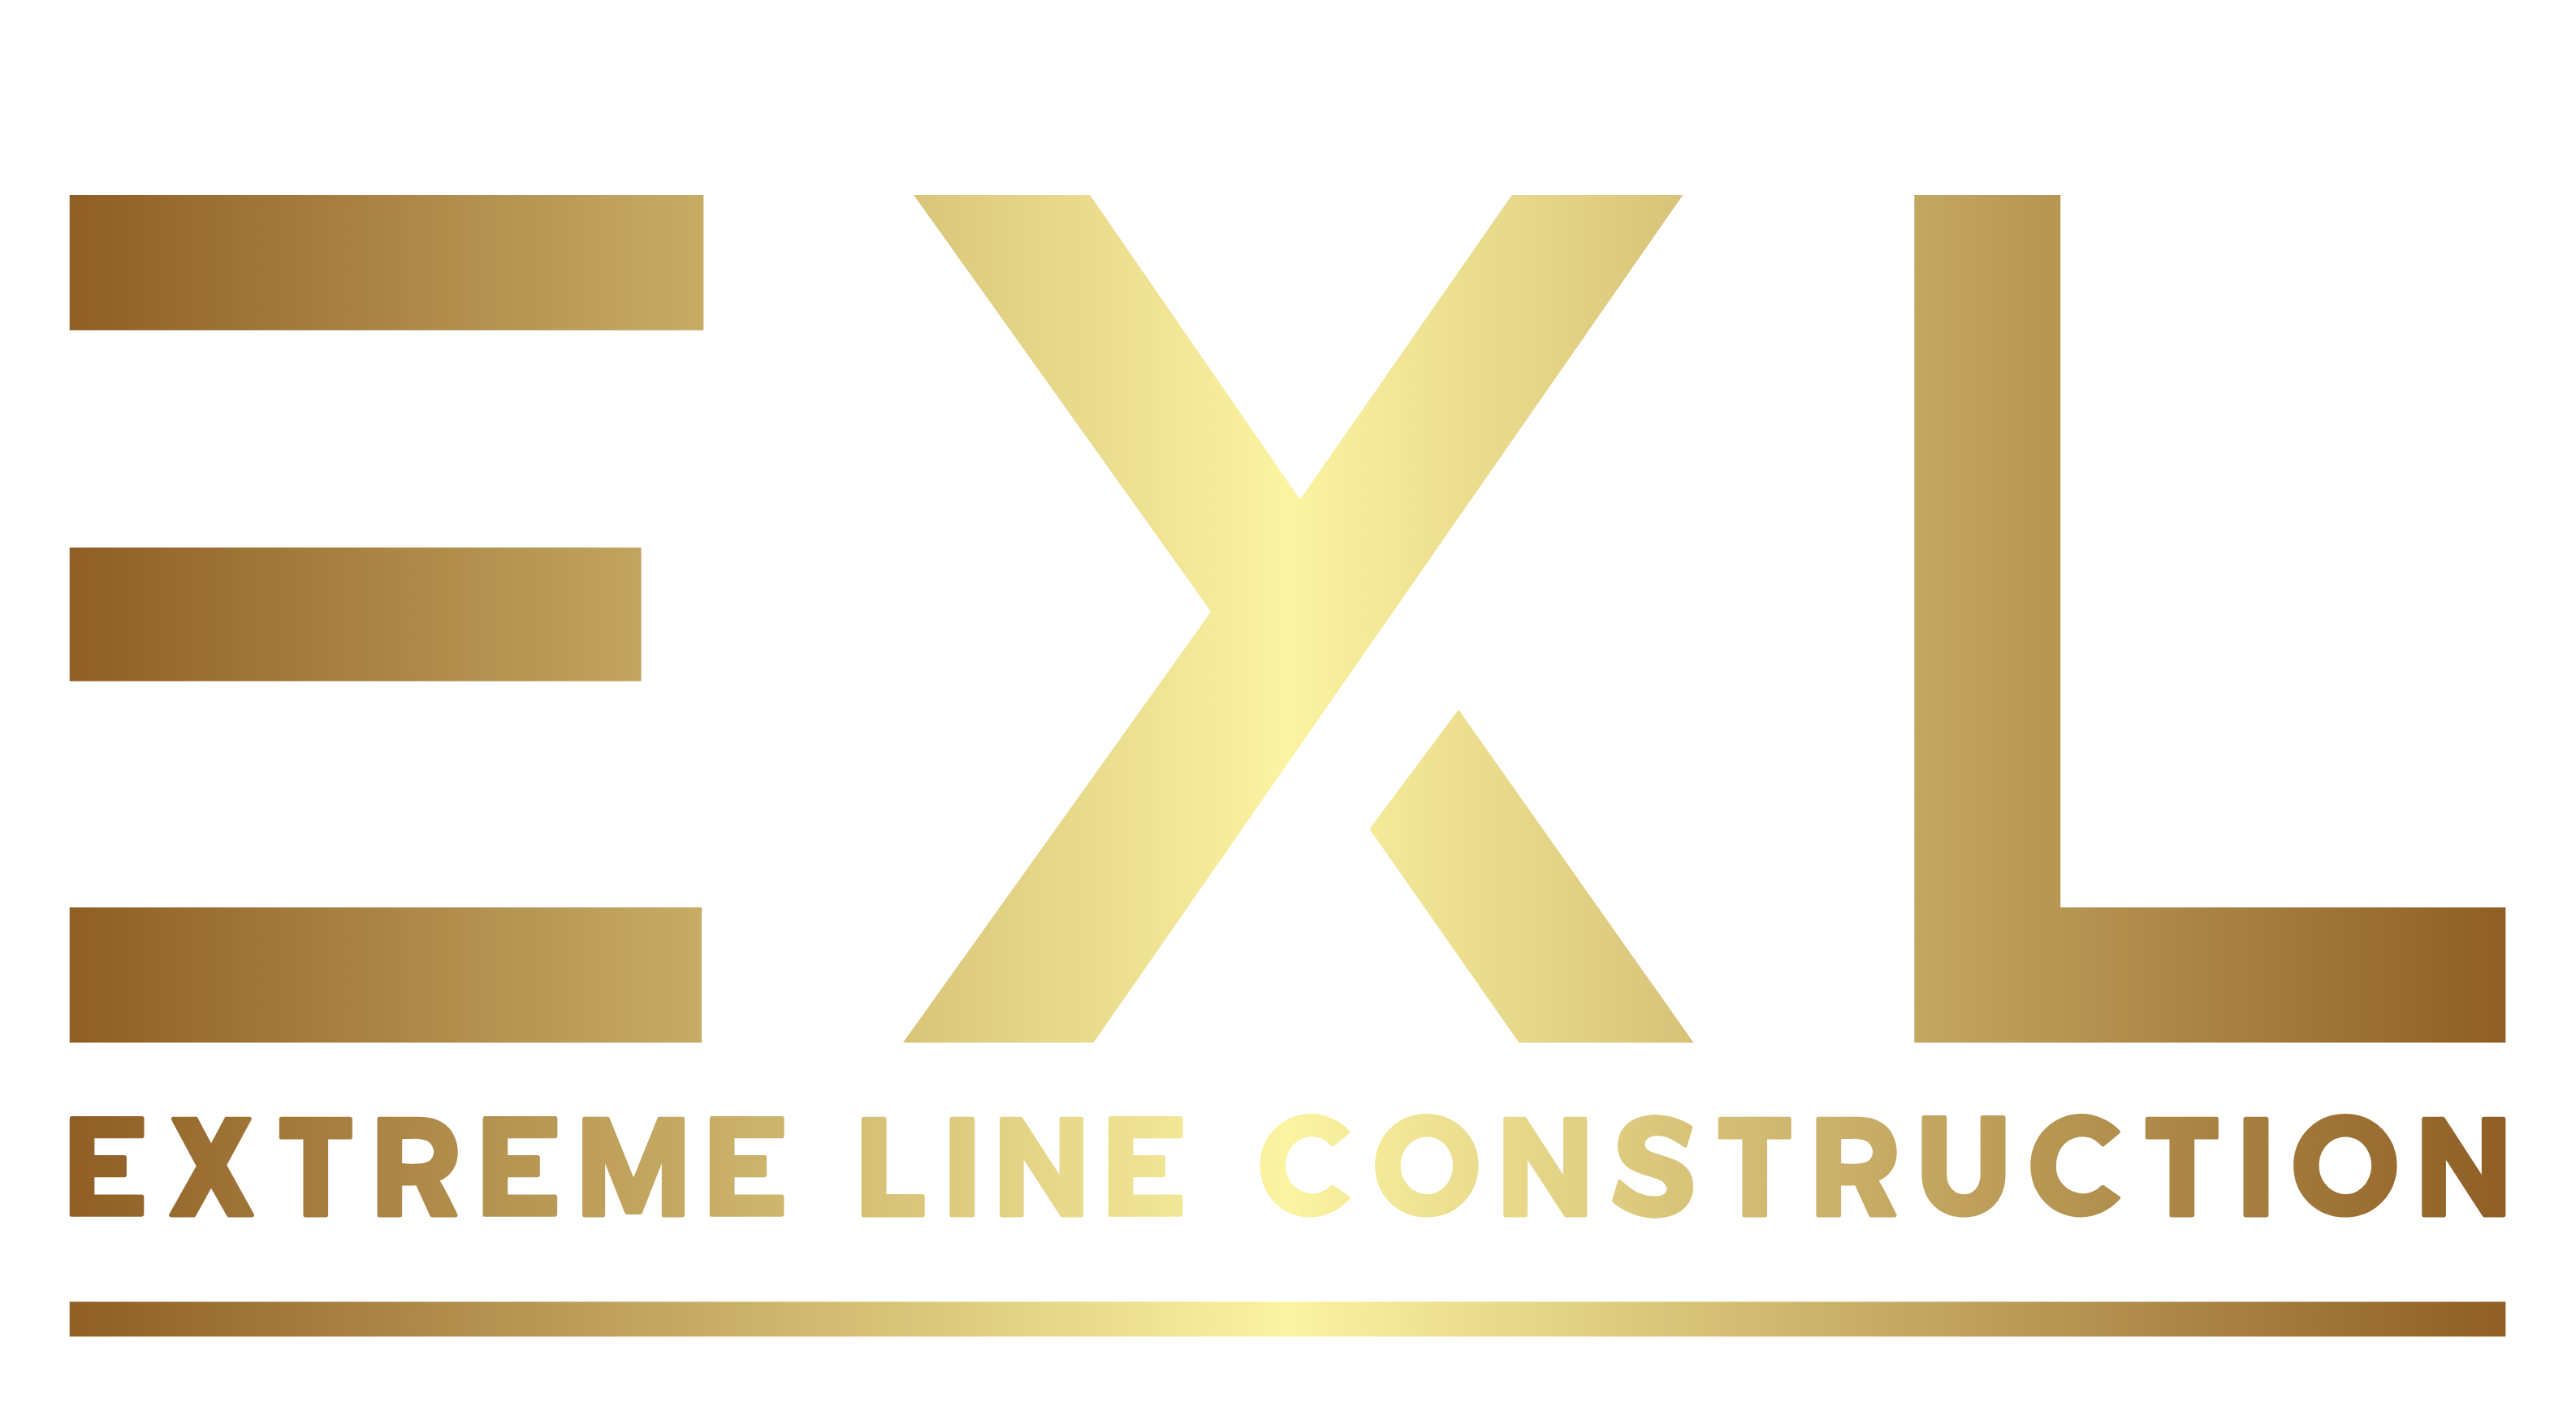 The logo for EXL Extreme Line Construction, a Custom Home Builder.